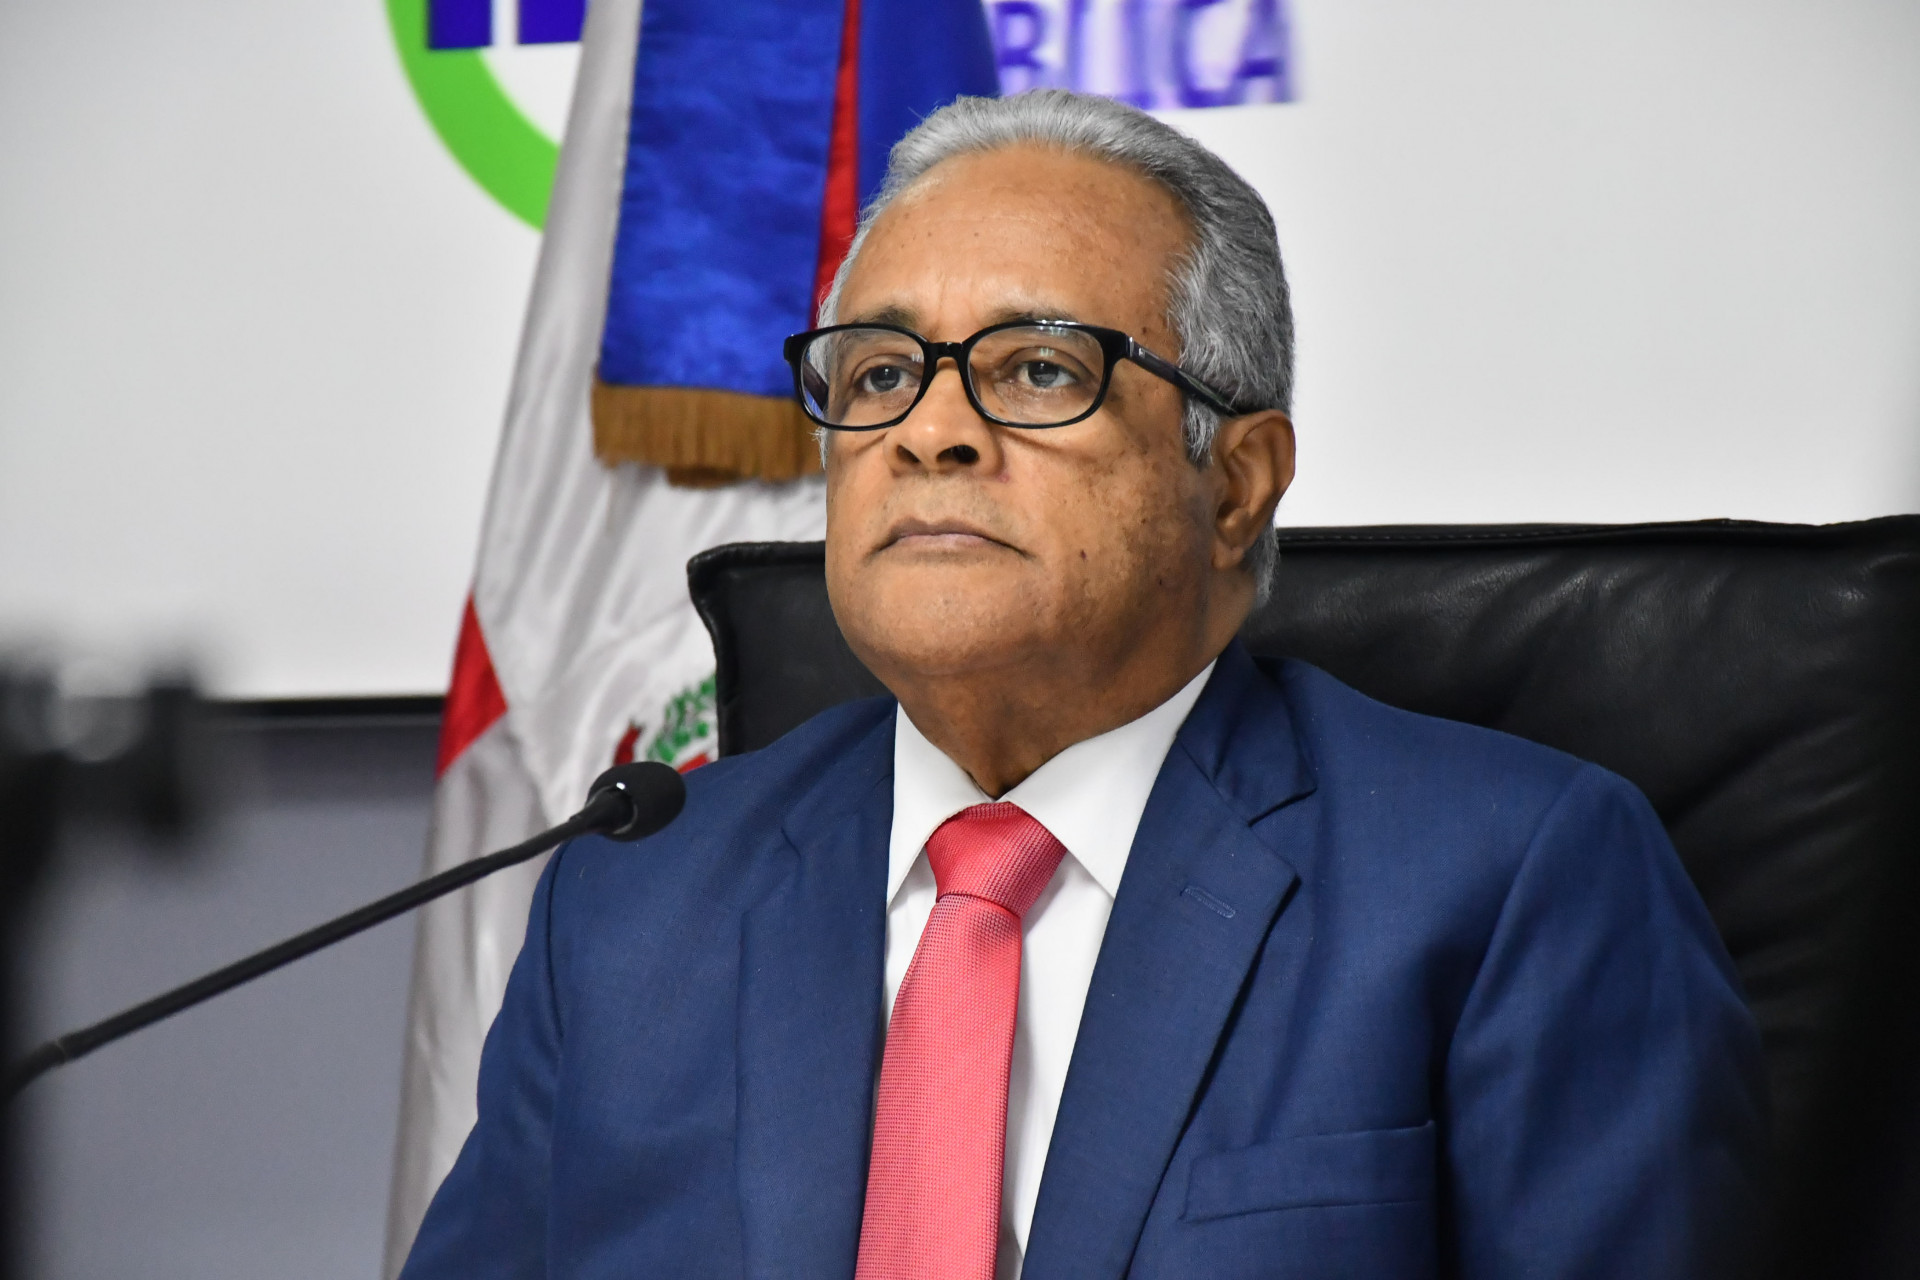 REPÚBLICA DOMINICANA: Ministro de Salud resalta transparencia en procesos compras MSP en medio de emergencia sanitaria; recuperados aumentan a 268